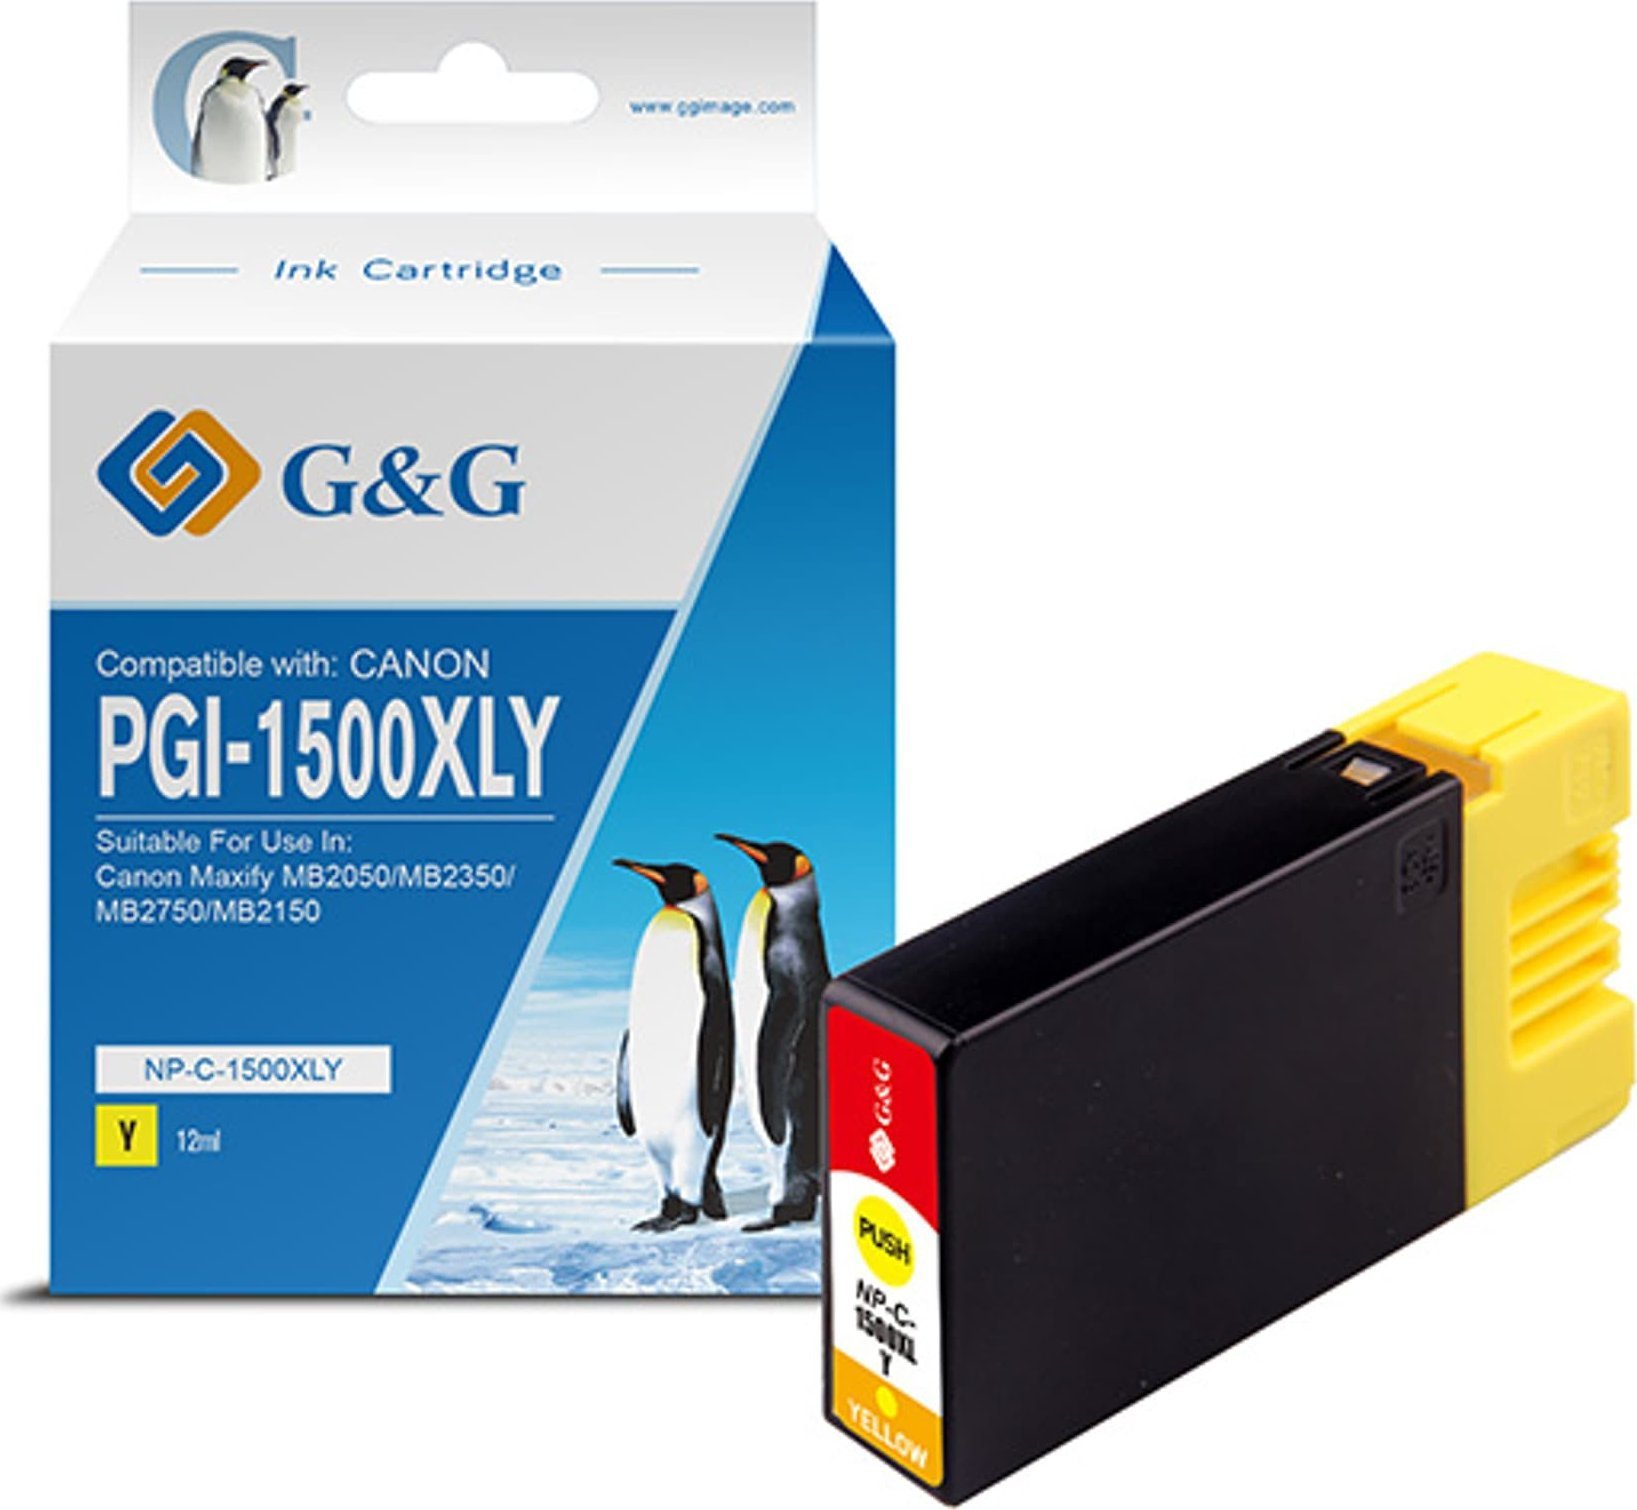 G&amp;G Cerneală/cerneală compatibilă G&amp;G cu PGI 1500XL, galben, NP-C-1500XLY/C, pentru Canon MAXIFY MB2050, MB2350